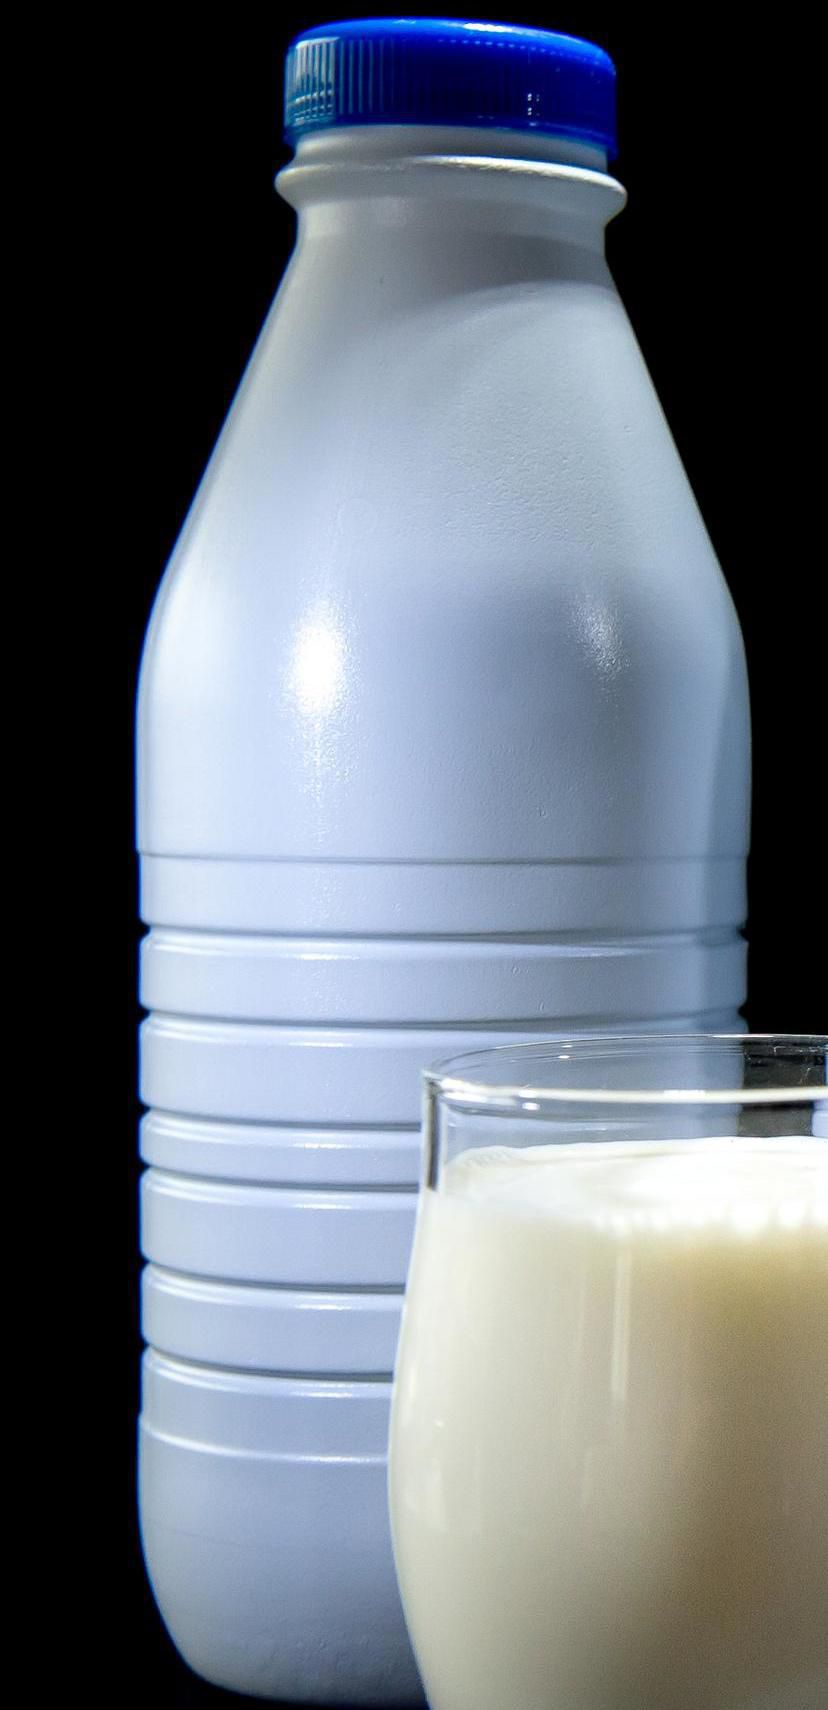  Pollution :  bientôt un malus sur les bouteilles de lait non recyclable?